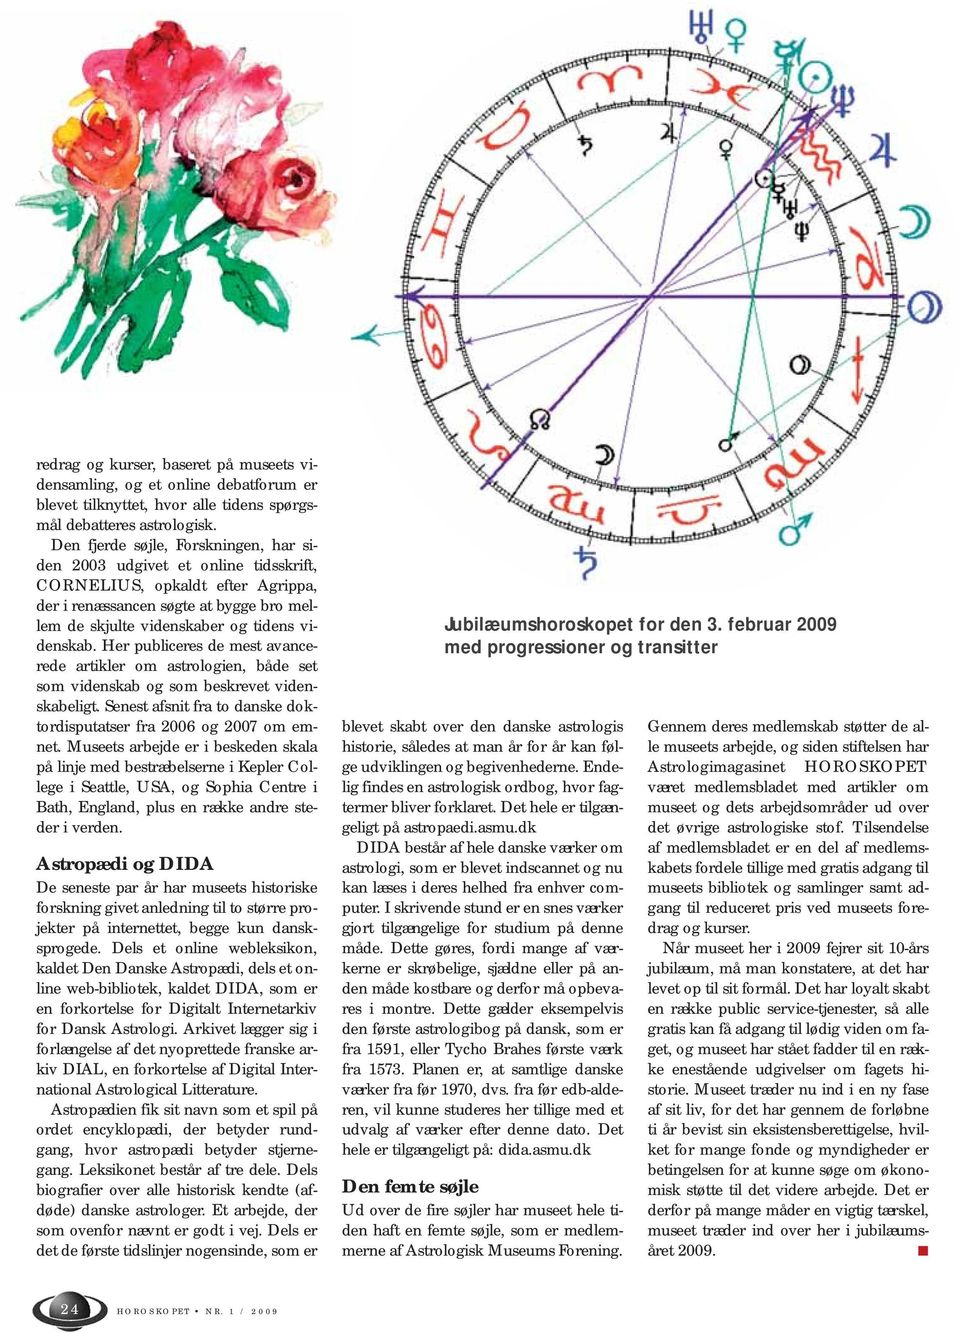 Her publiceres de mest avancerede artikler om astrologien, både set som videnskab og som beskrevet videnskabeligt. Senest afsnit fra to danske doktordisputatser fra 2006 og 2007 om emnet.